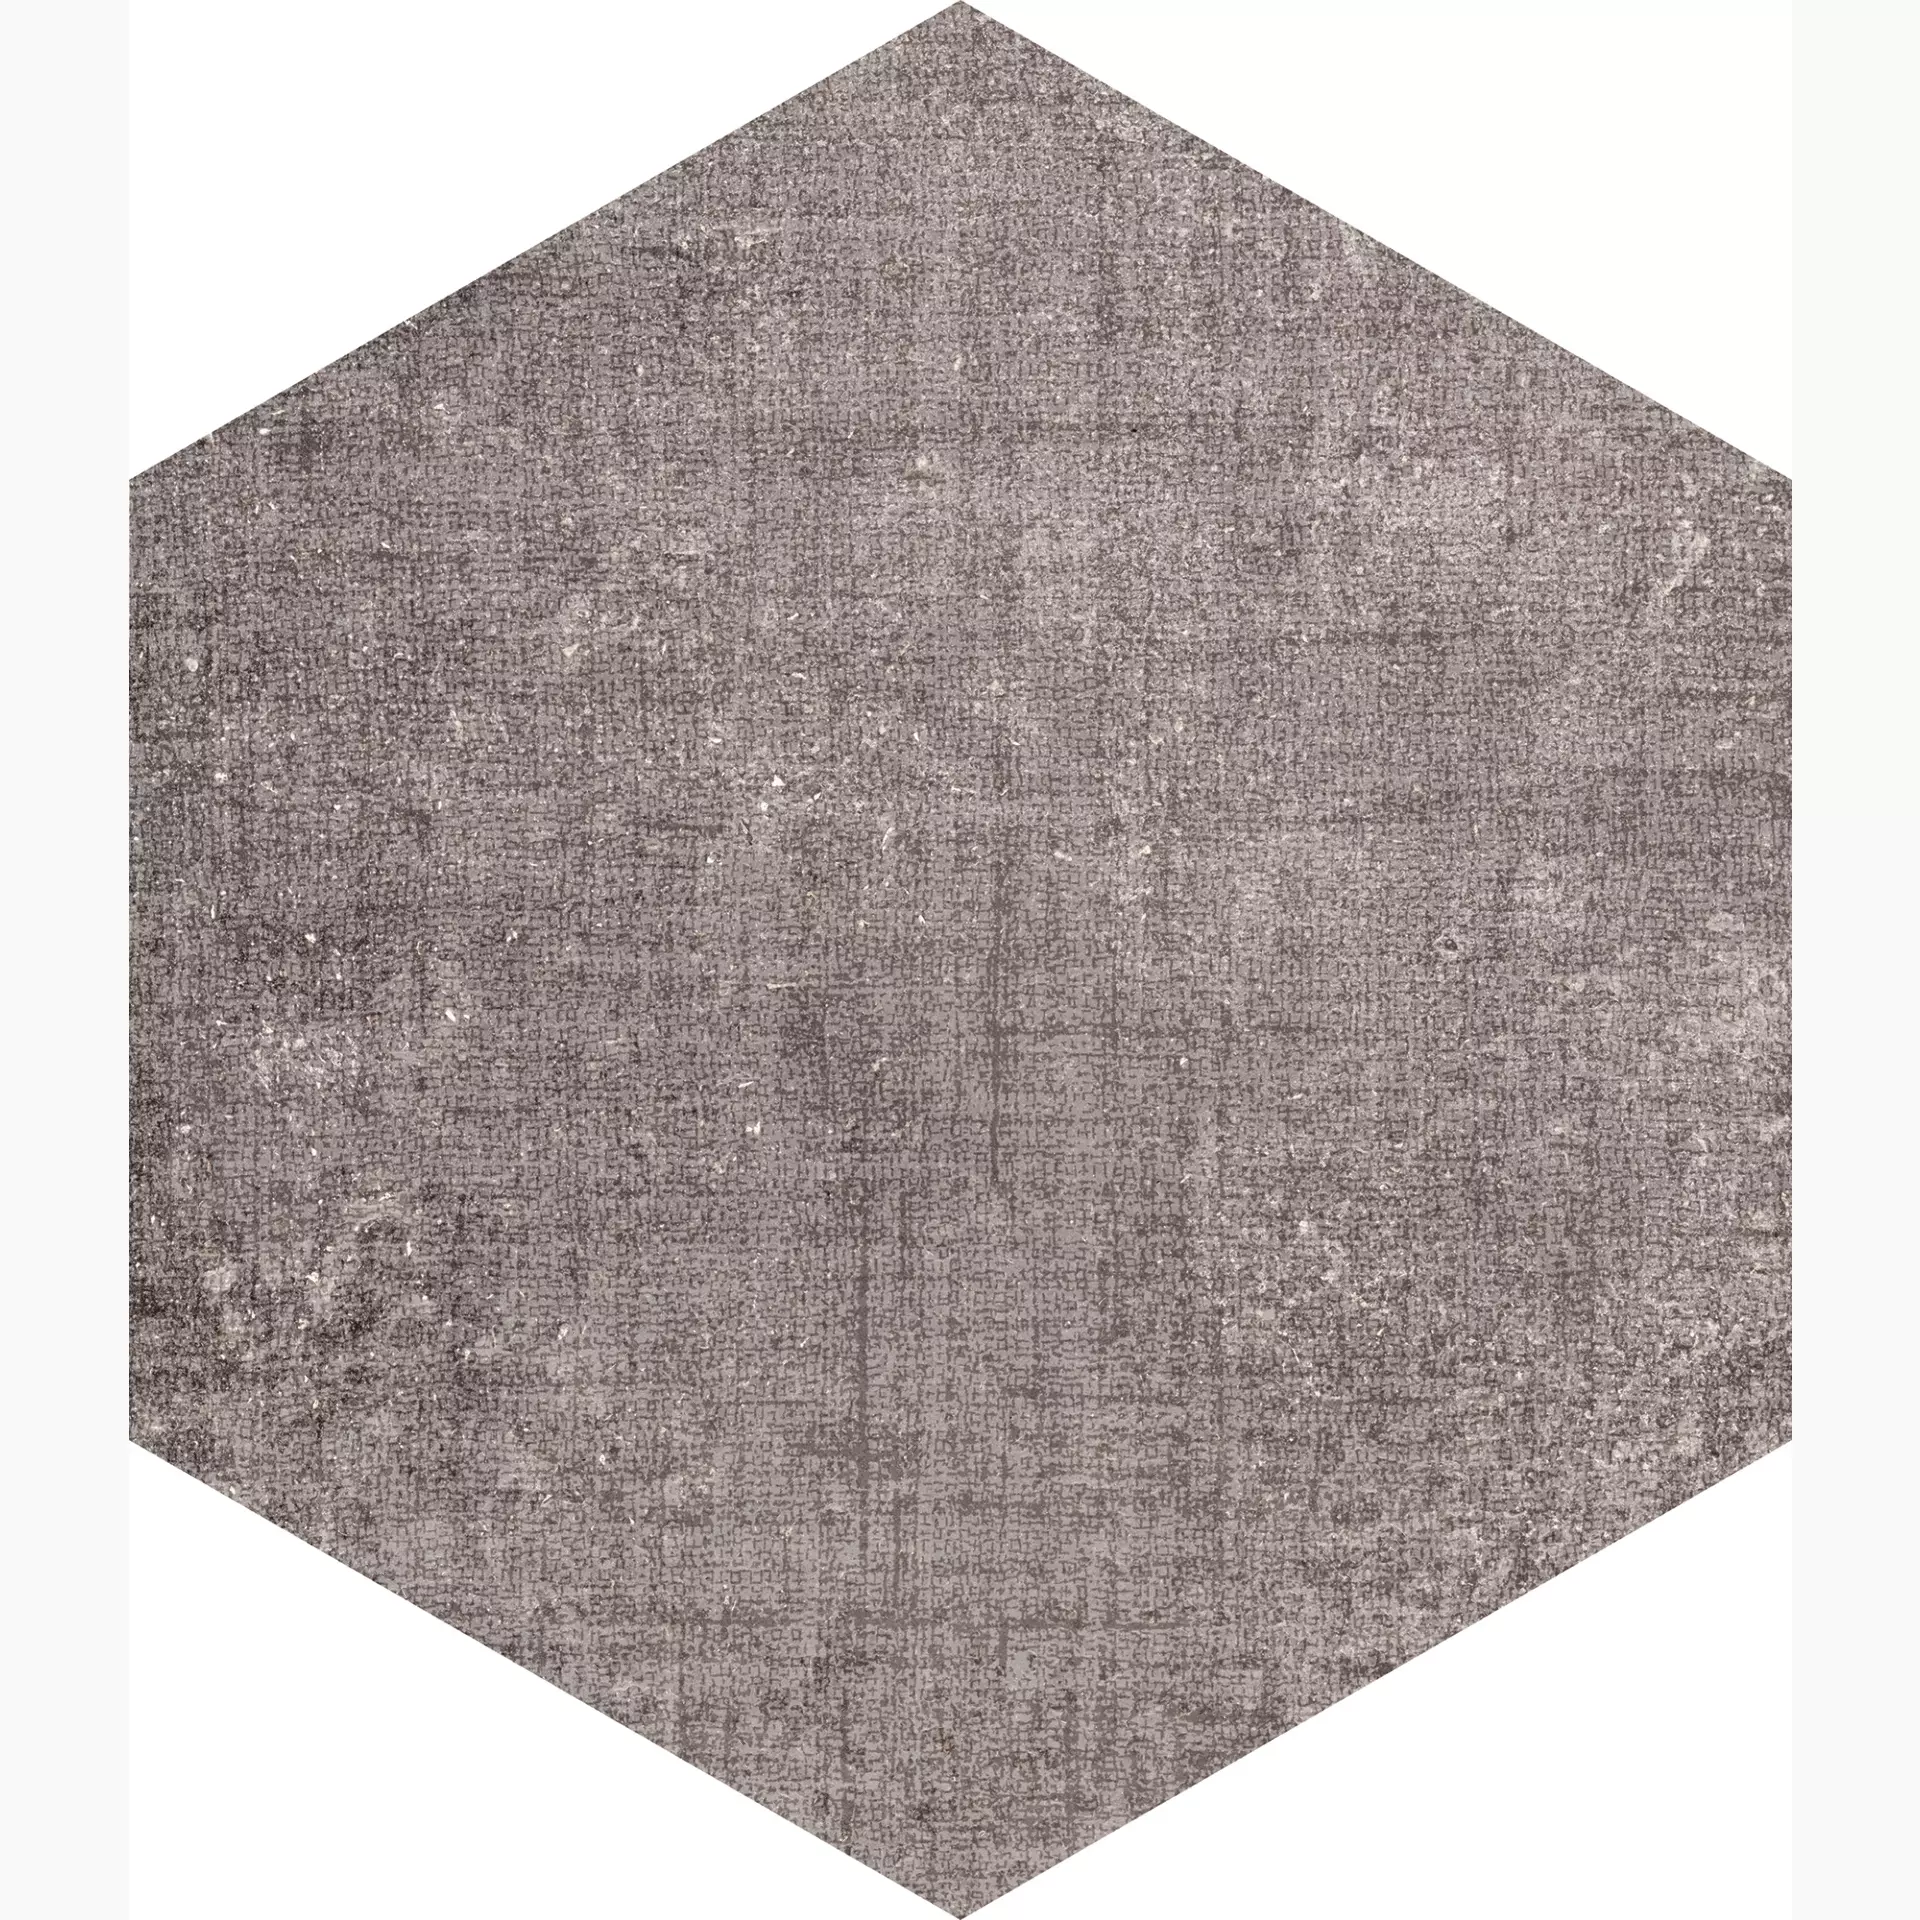 Marcacorona Textile Taupe Naturale – Matt Esagona D625 21,6x25cm 9mm